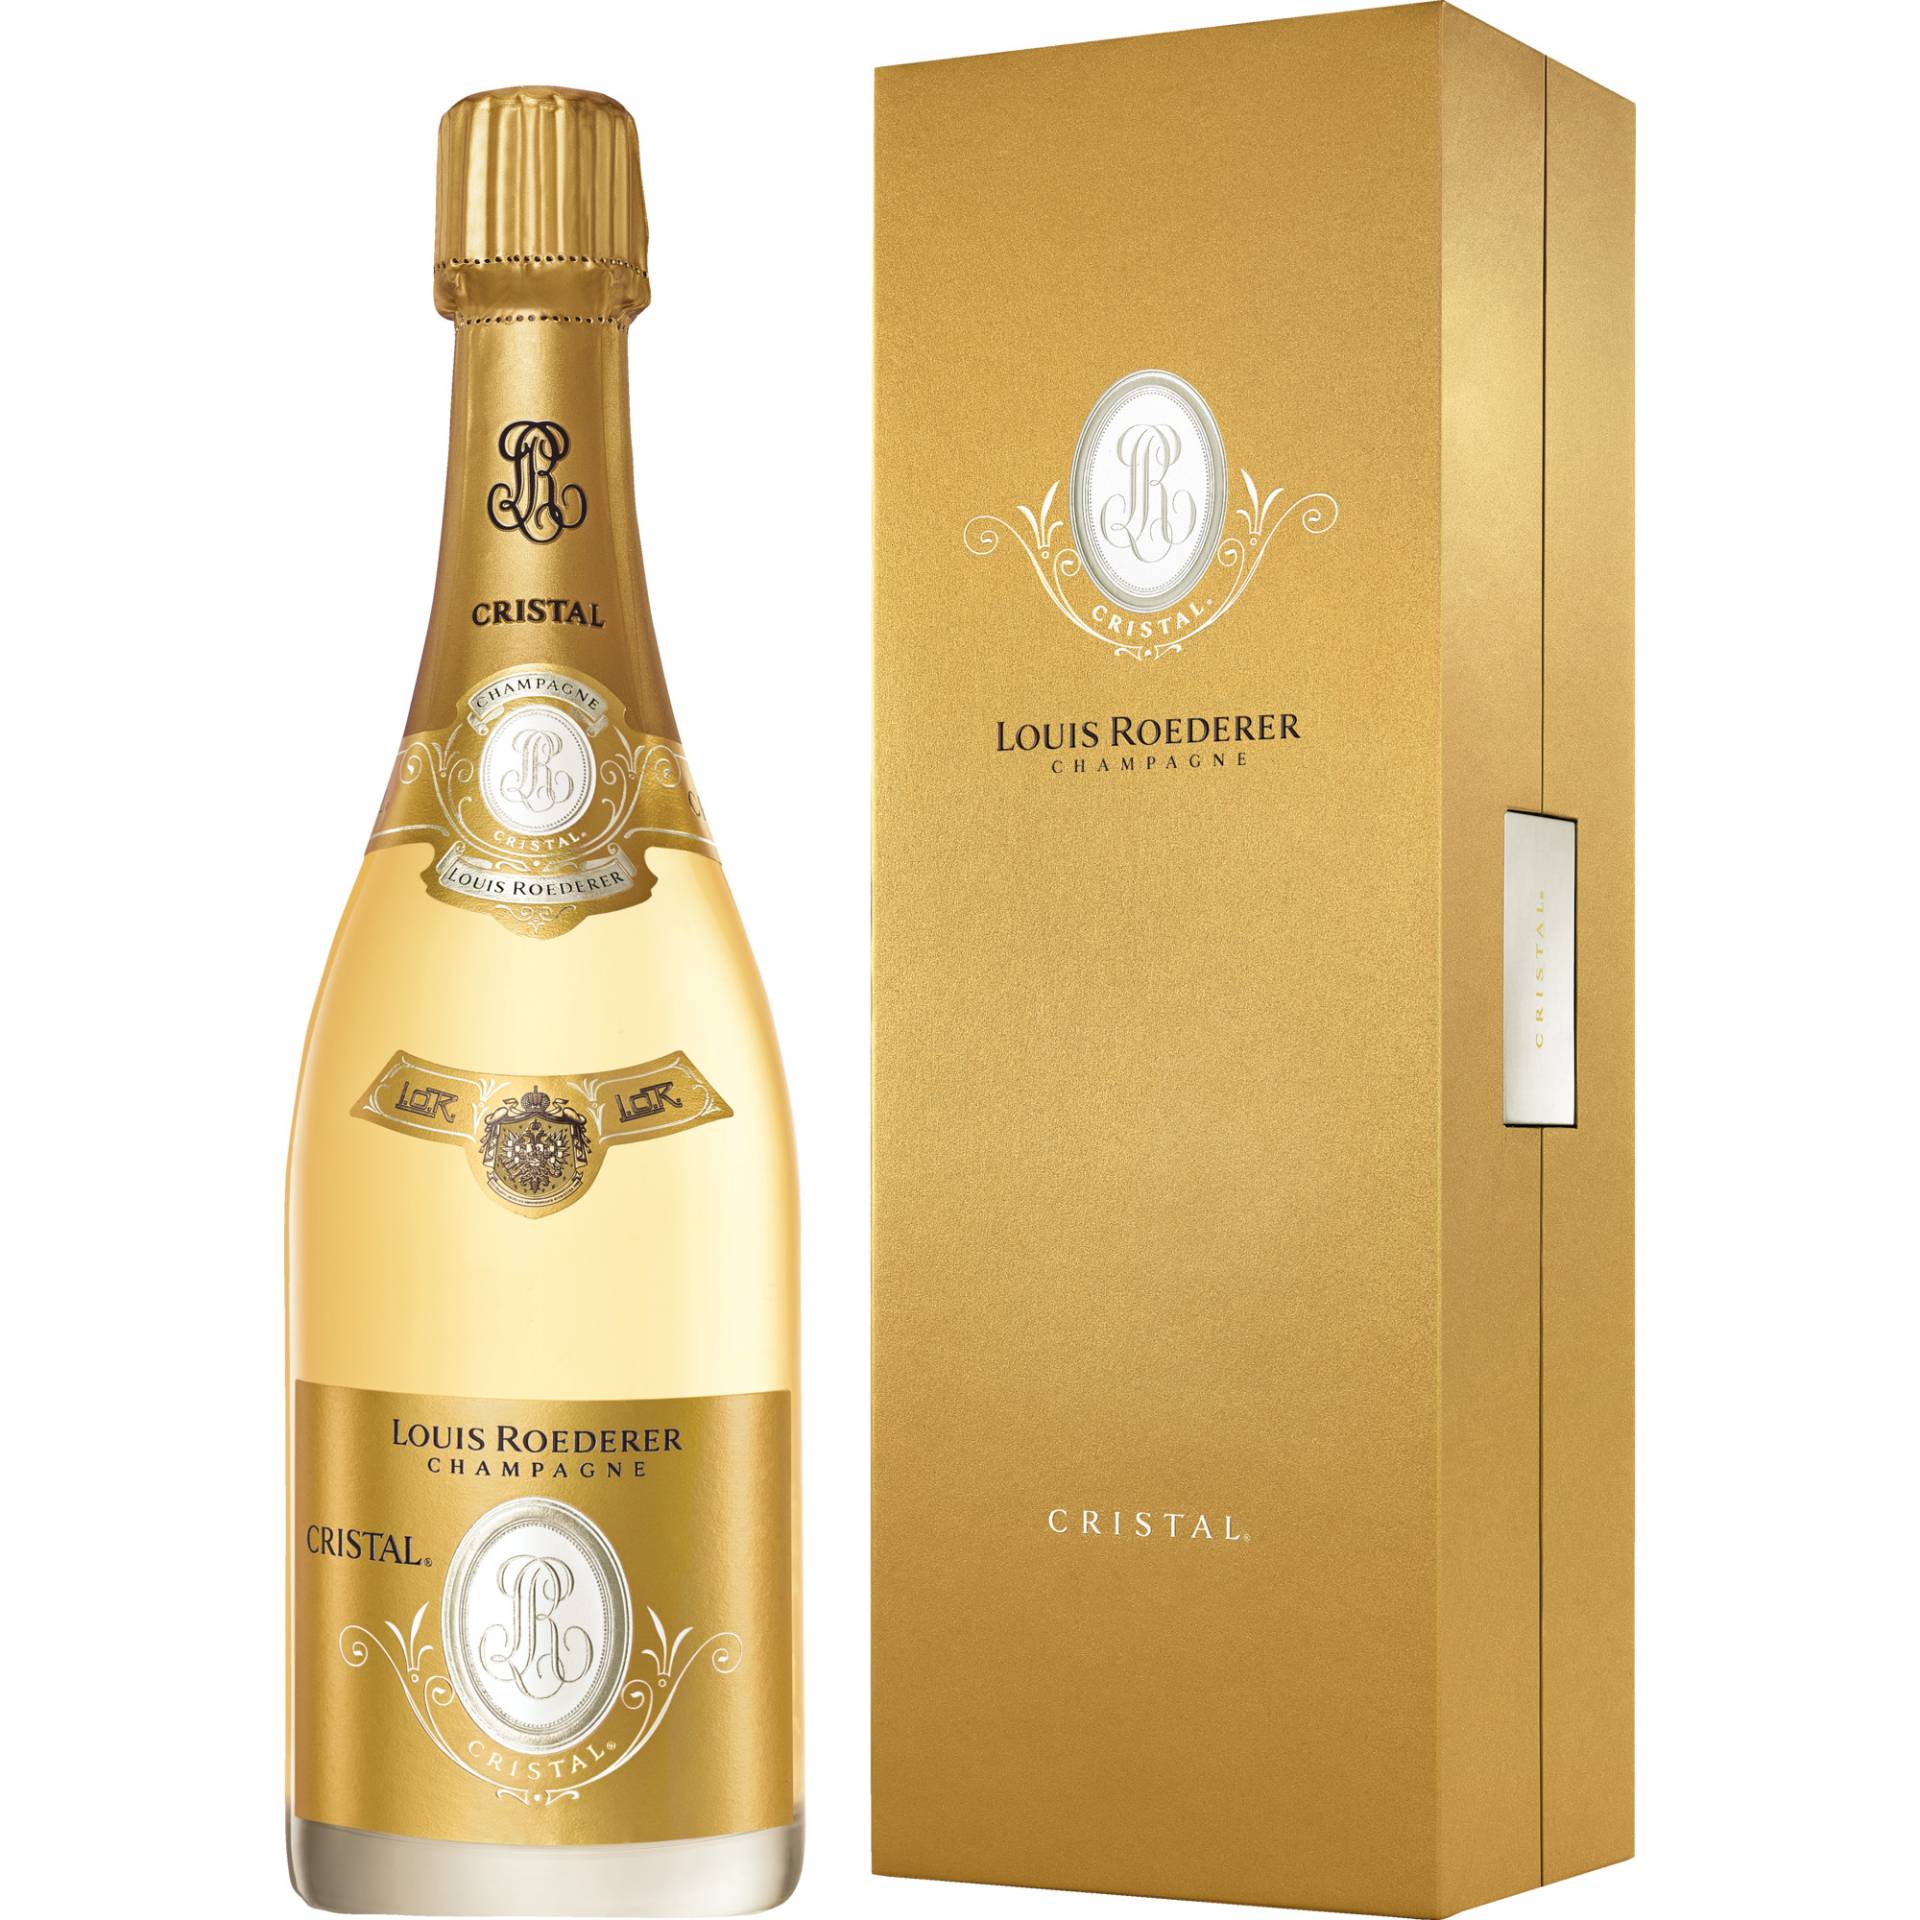 Champagne Louis Roederer Cristal, Brut, Champagne AC, Geschenketui, Champagne, 2015, Schaumwein von Louis Roederer S. A., 51100 Reims, France